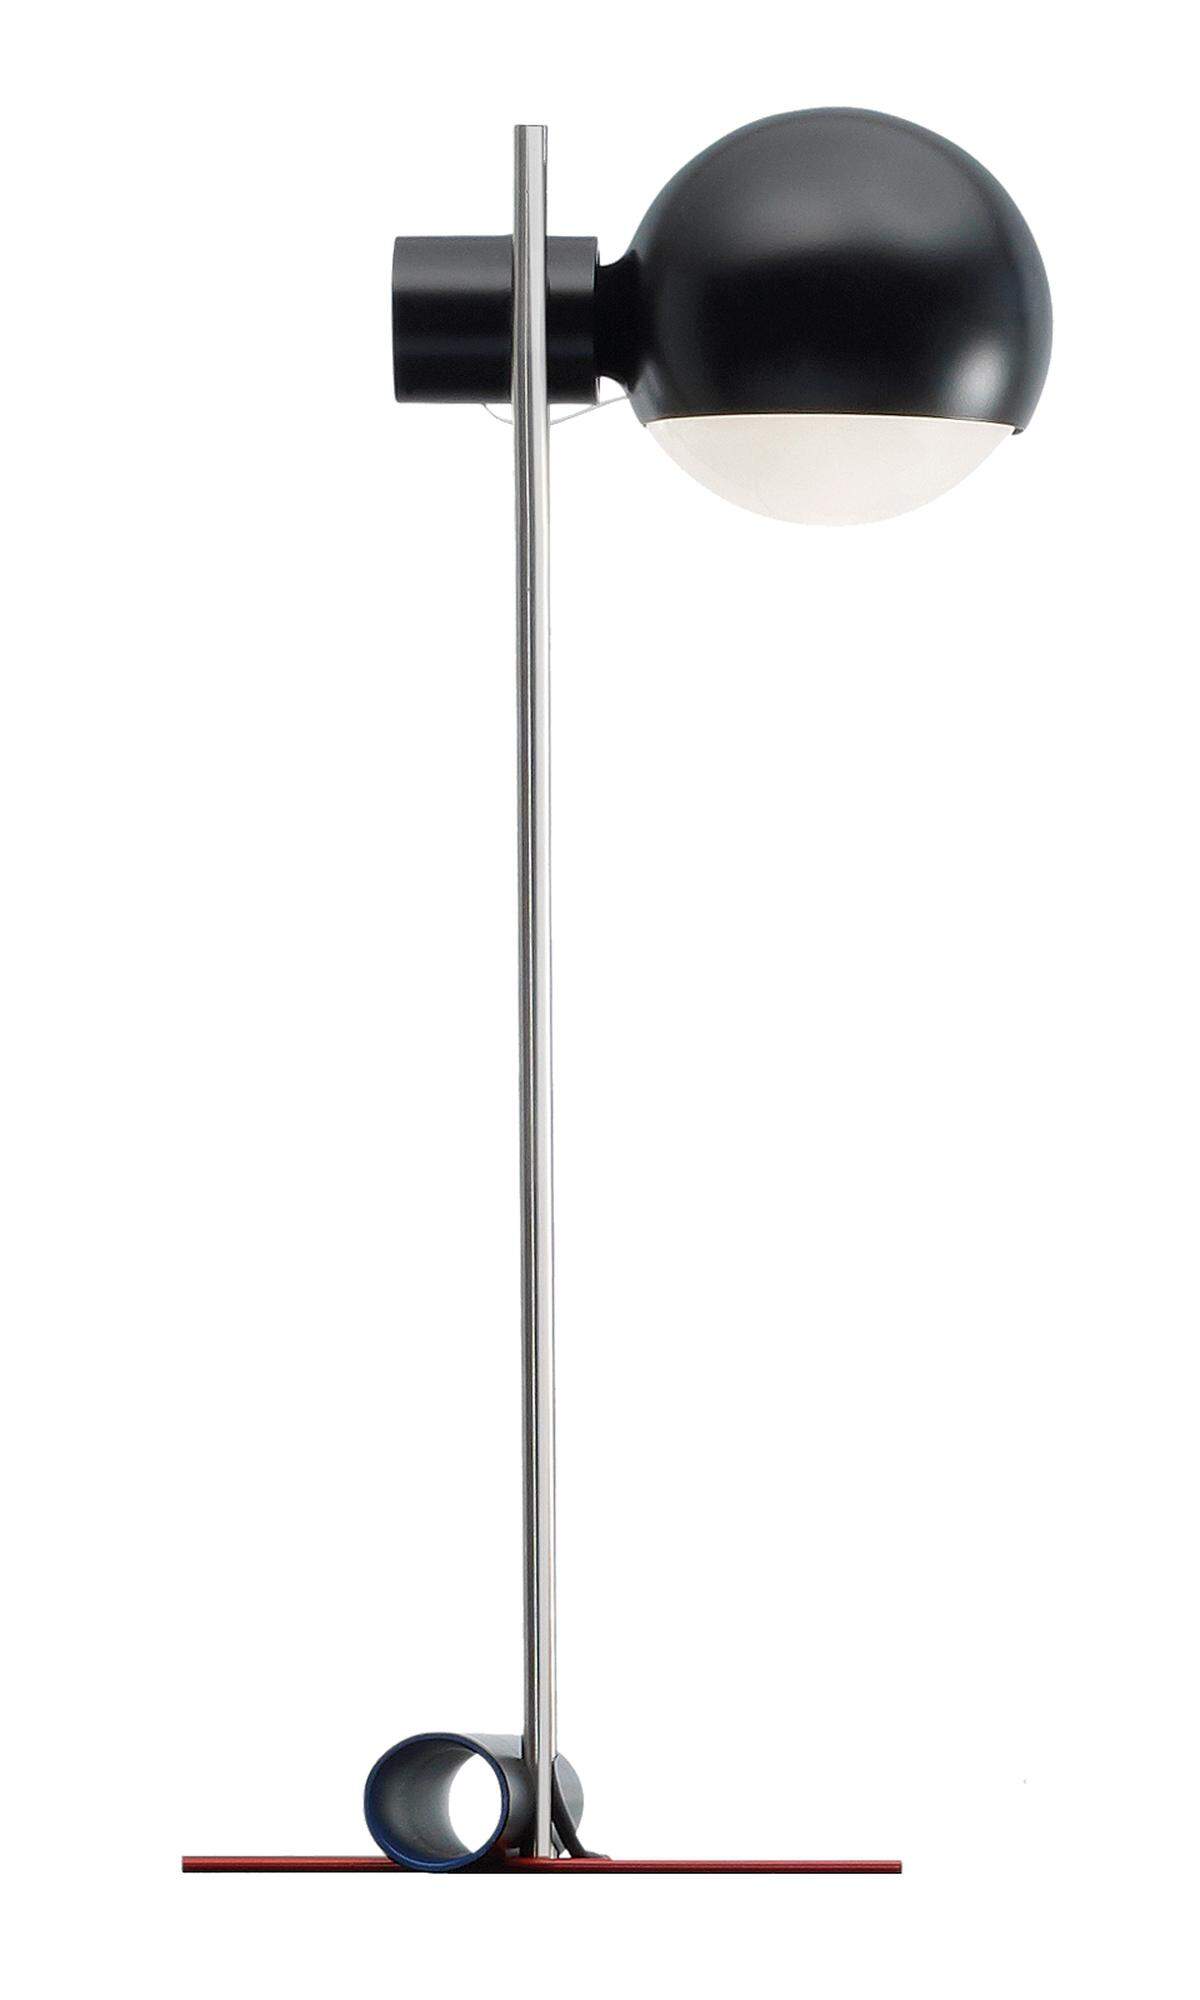 Tecta. Gerrit Rietveld entwarf die „Tafellampje" 1925. Für 2019 grub der Hersteller ihre Zeichnungen aus.